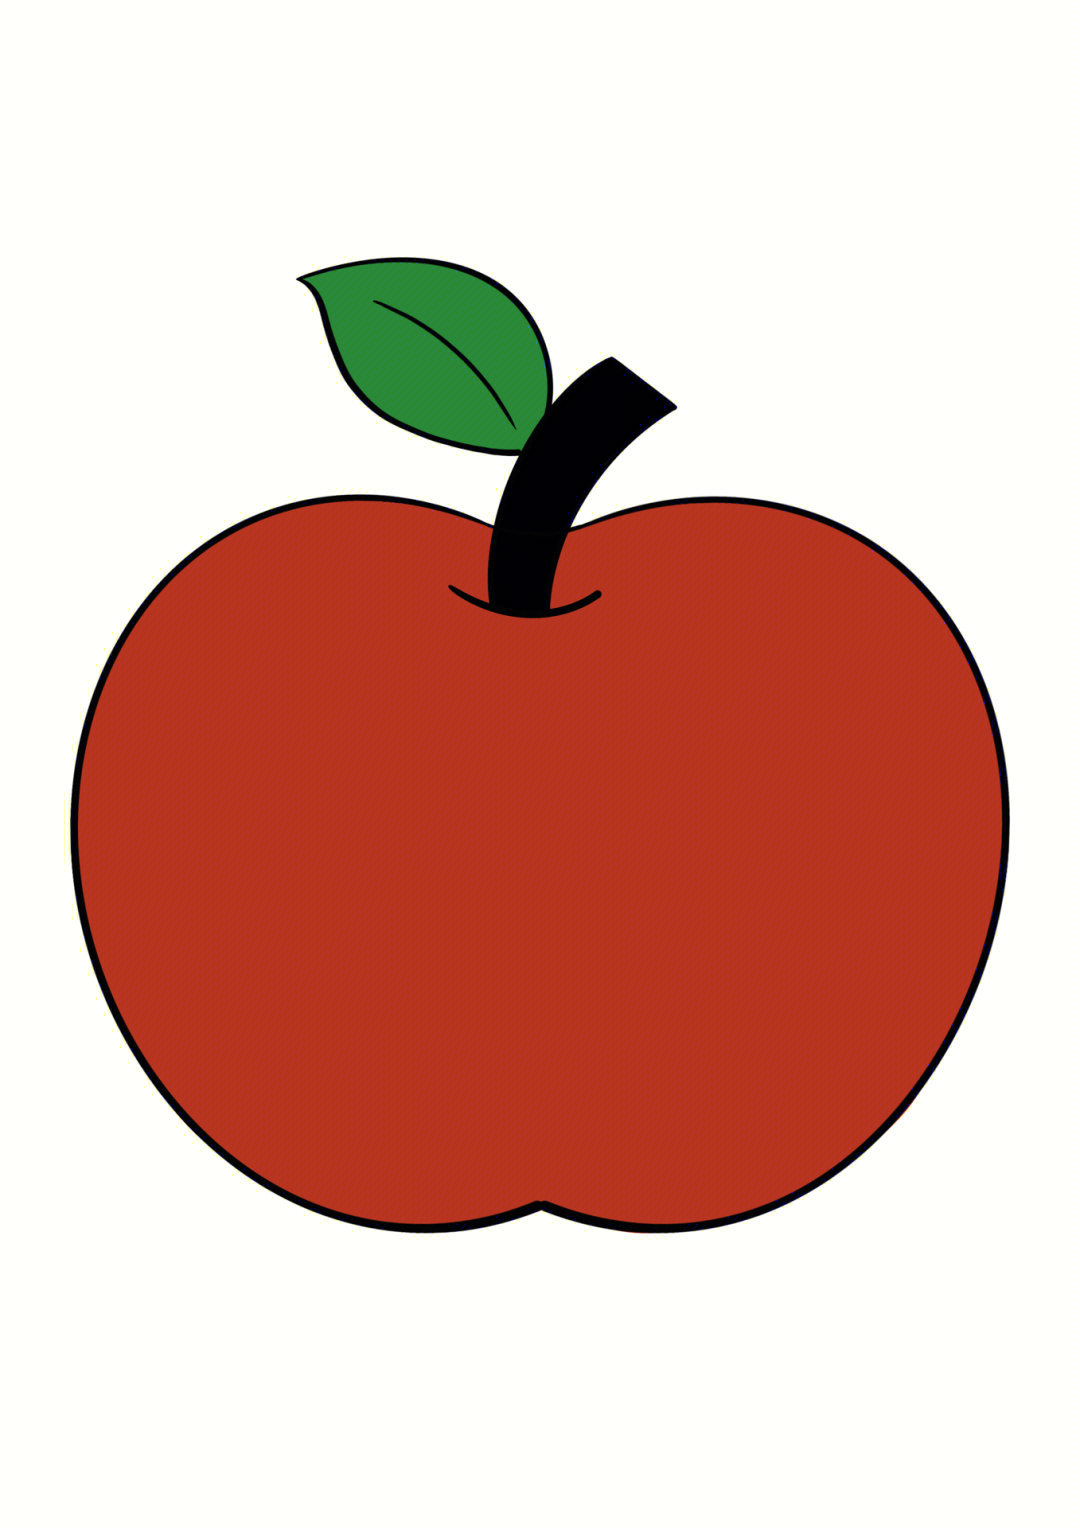 简笔画教程分享苹果